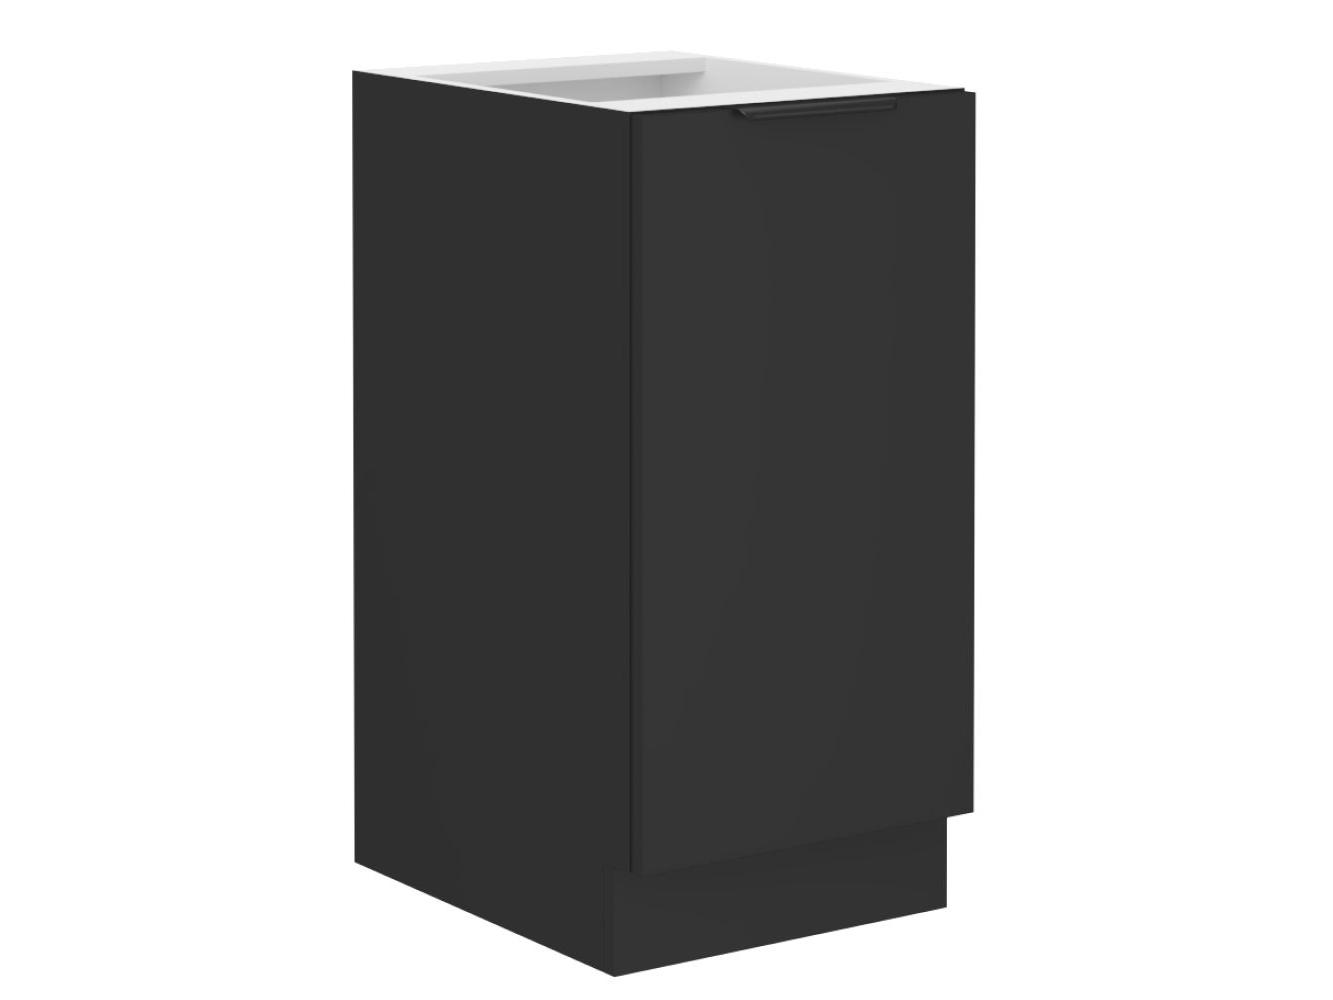 Dolní kuchyňská skříňka Sobera 40 D 1F BB (černá)